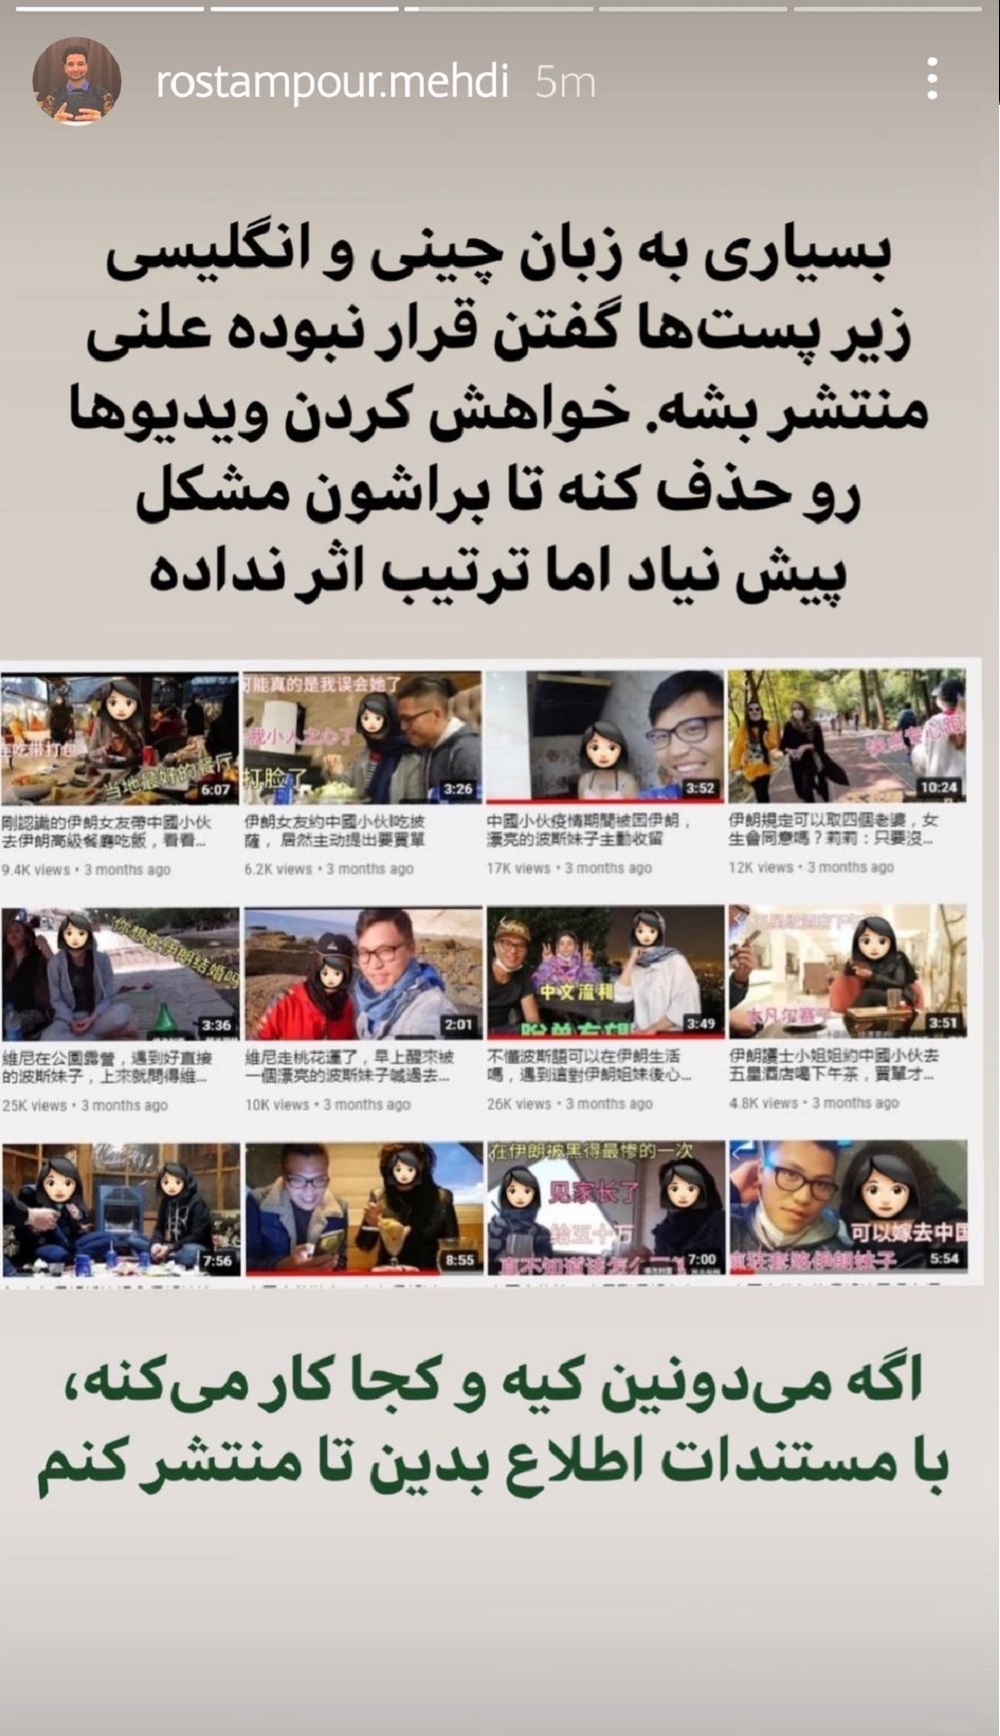 فیلم های شهروند چینی و دختران ایرانی در یوتیوب